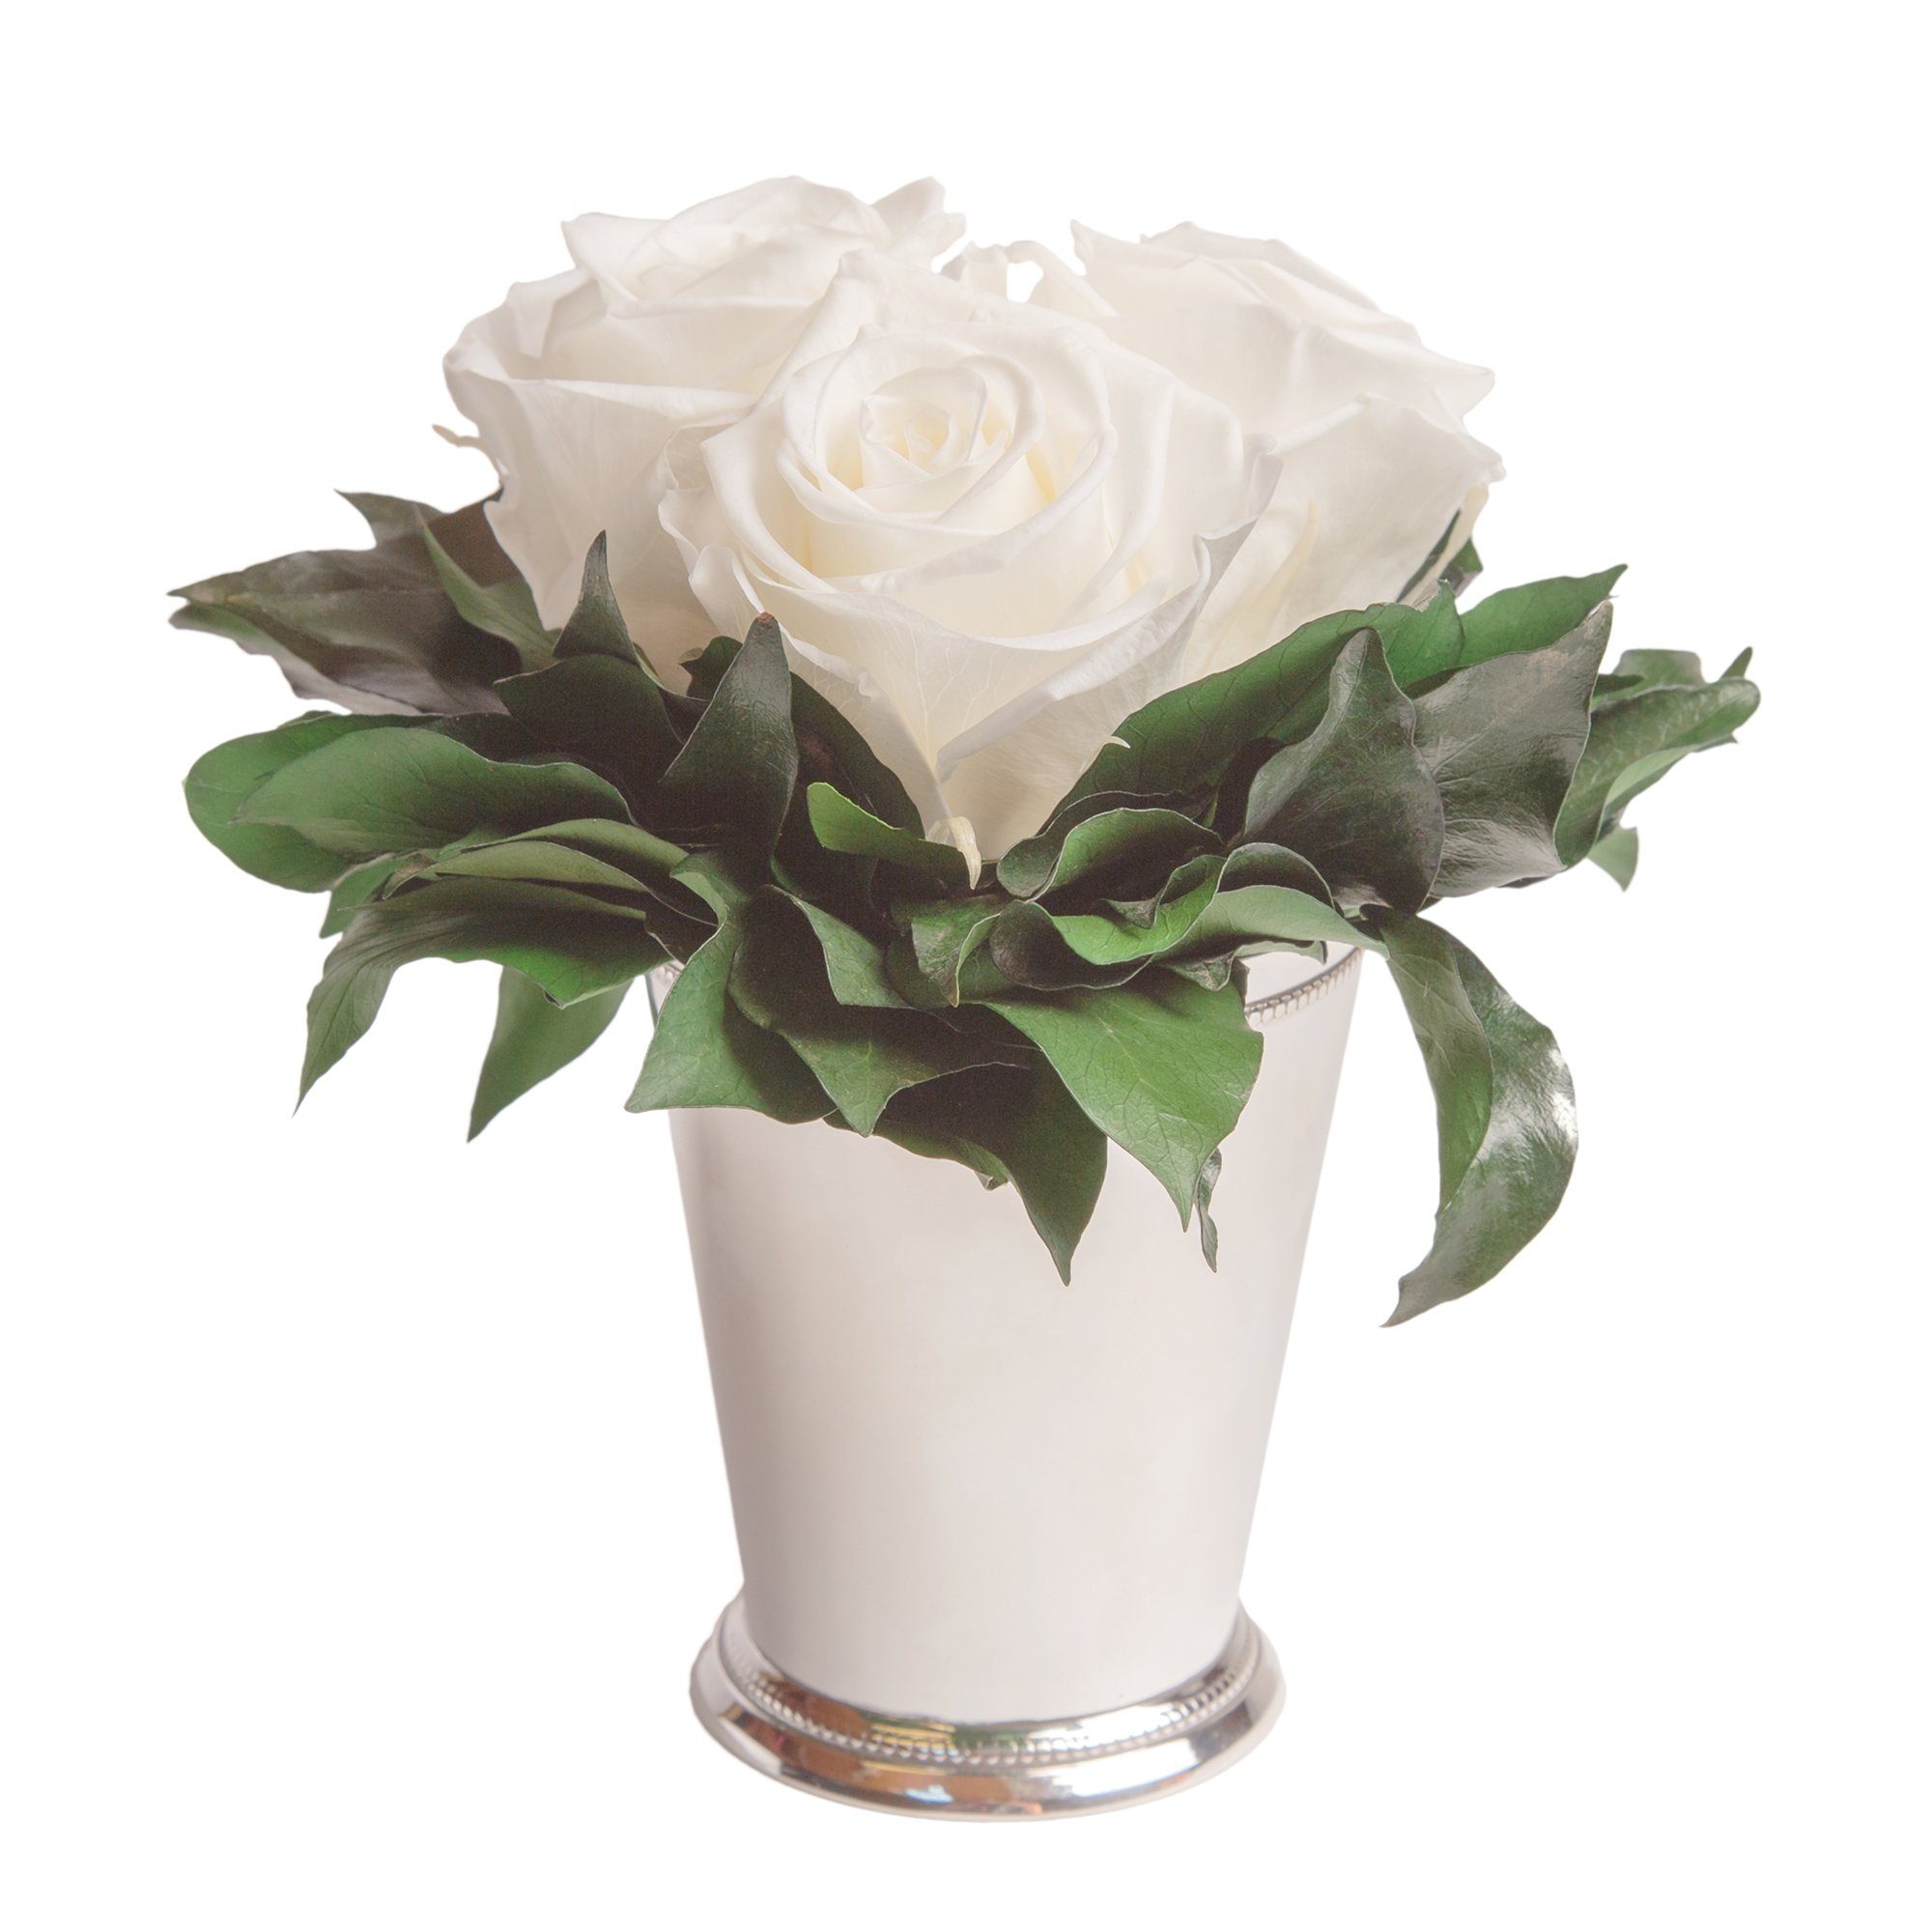 Kunstorchidee 3 Infinity Rosen silberfarbene Vase Wohnzimmer Deko Blumenstrauß Rose, ROSEMARIE SCHULZ Heidelberg, Höhe 15 cm, Rose haltbar bis zu 3 Jahre Weiß